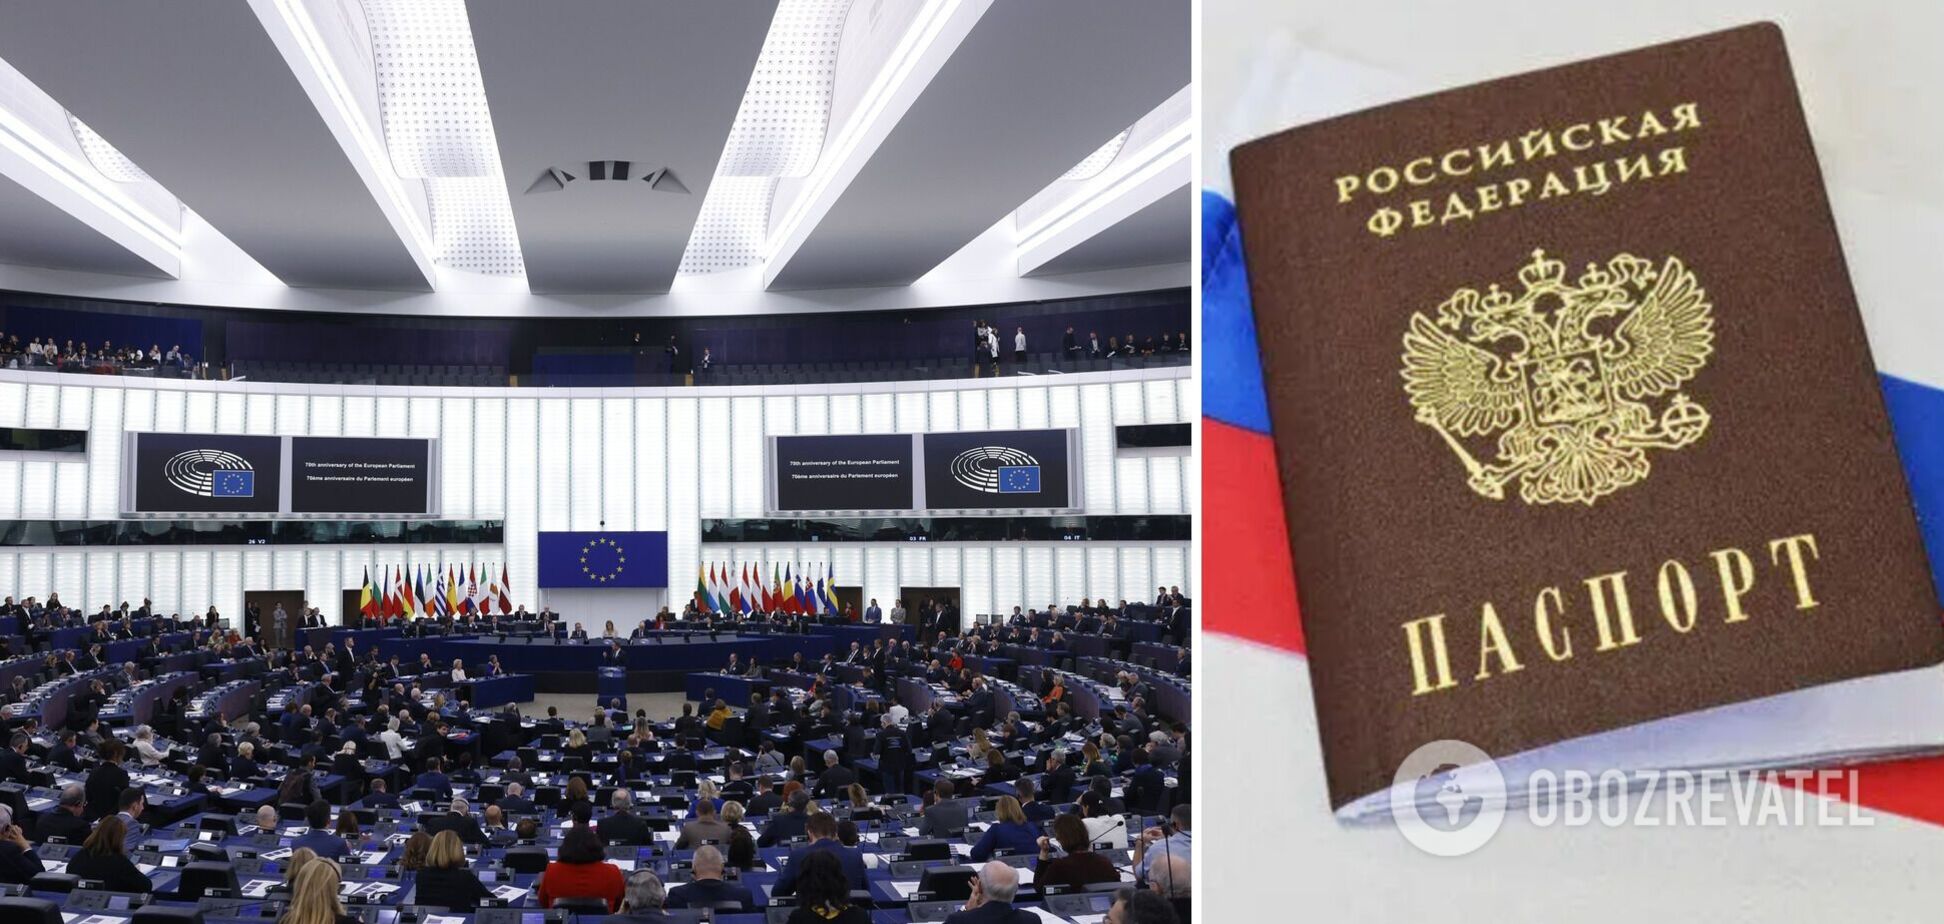 Європарламент проголосував за невизнання паспортів Росії, виданих на окупованих територіях